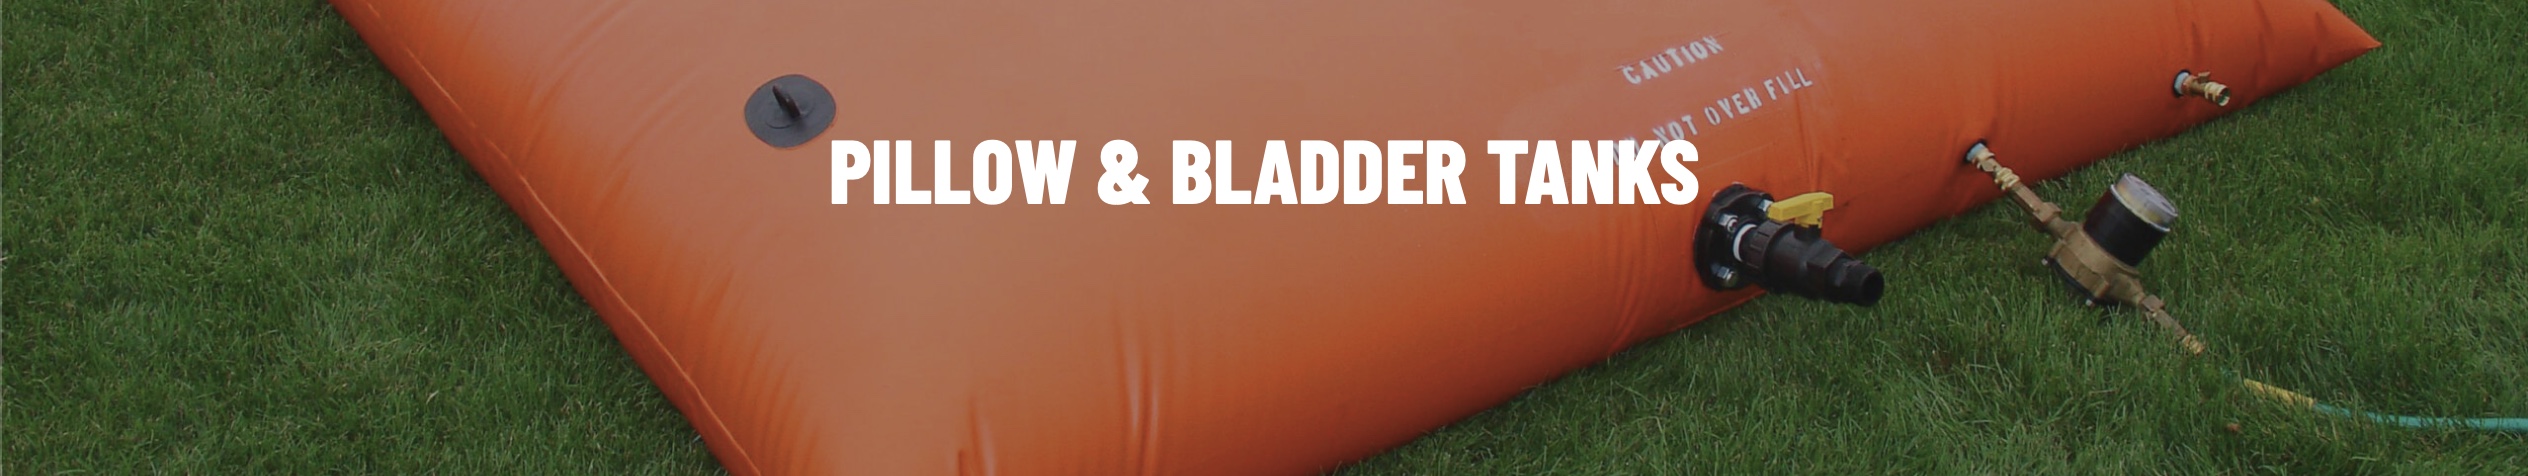 pillow-bladder-tanks.jpg